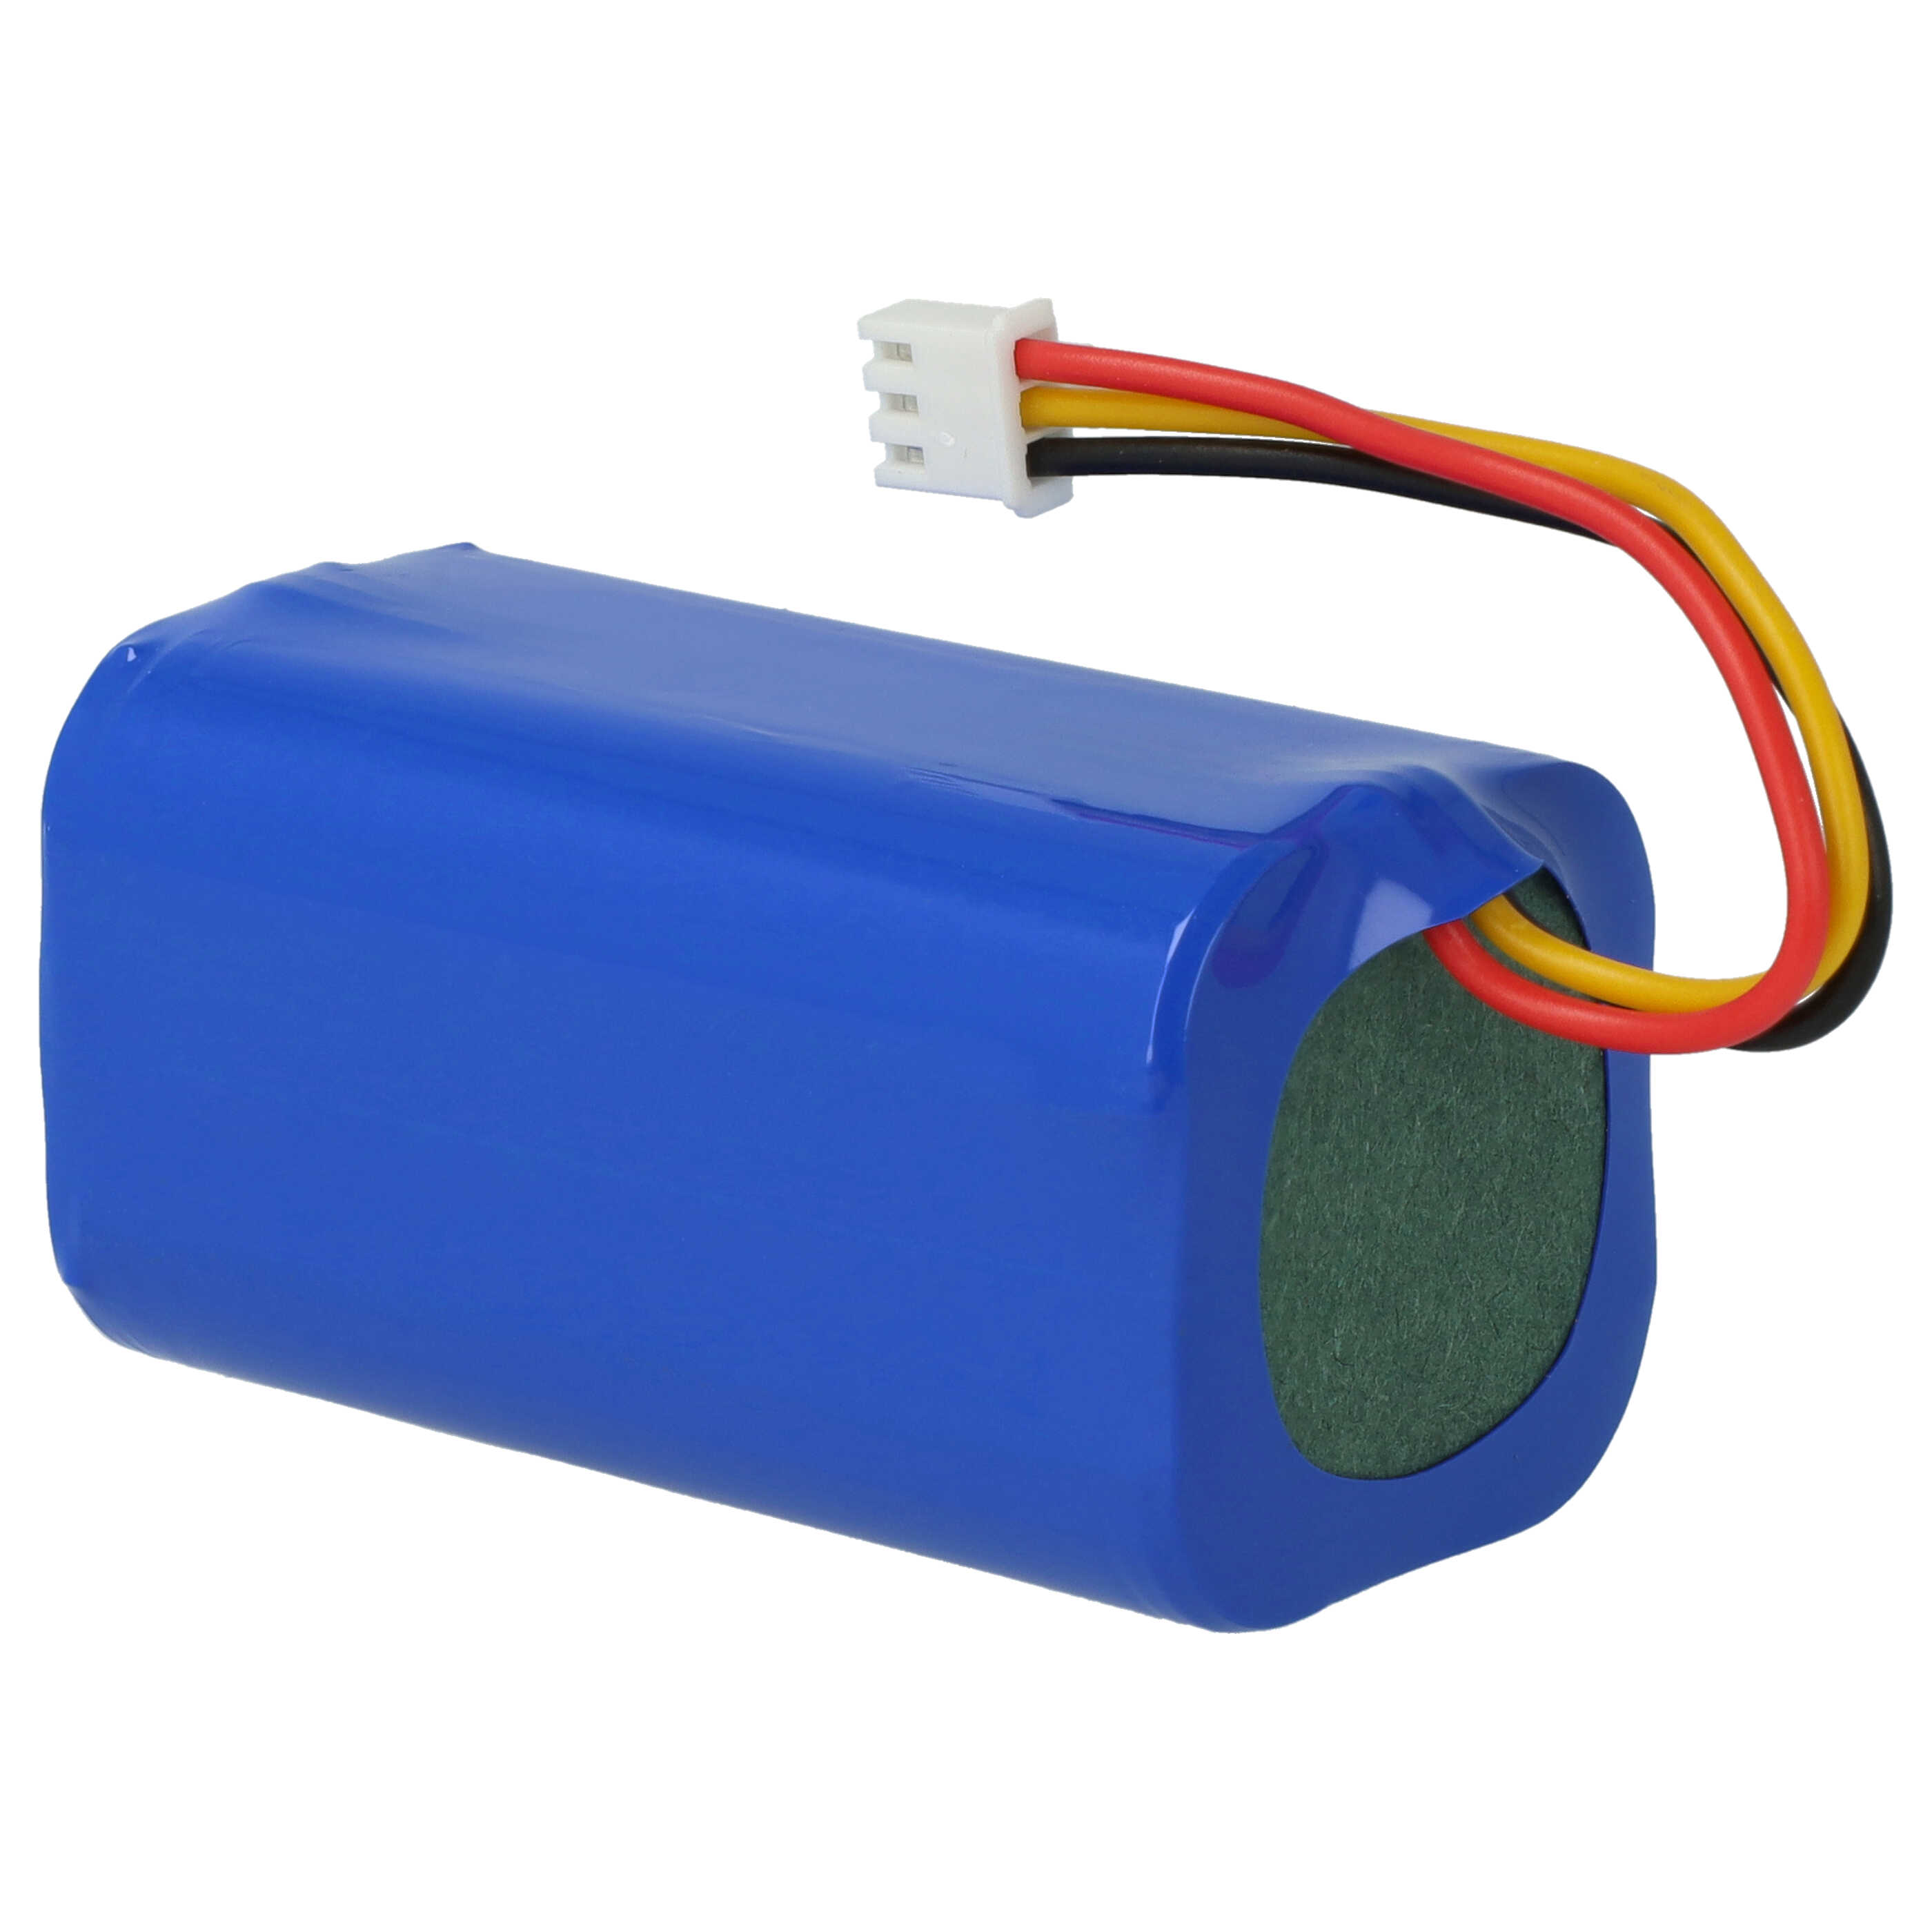 Akumulator do odkurzacza zamiennik Blaupunkt 6.60.40.02-0, D071-INR-CH-4S1P - 2600 mAh 14,4 V Li-Ion